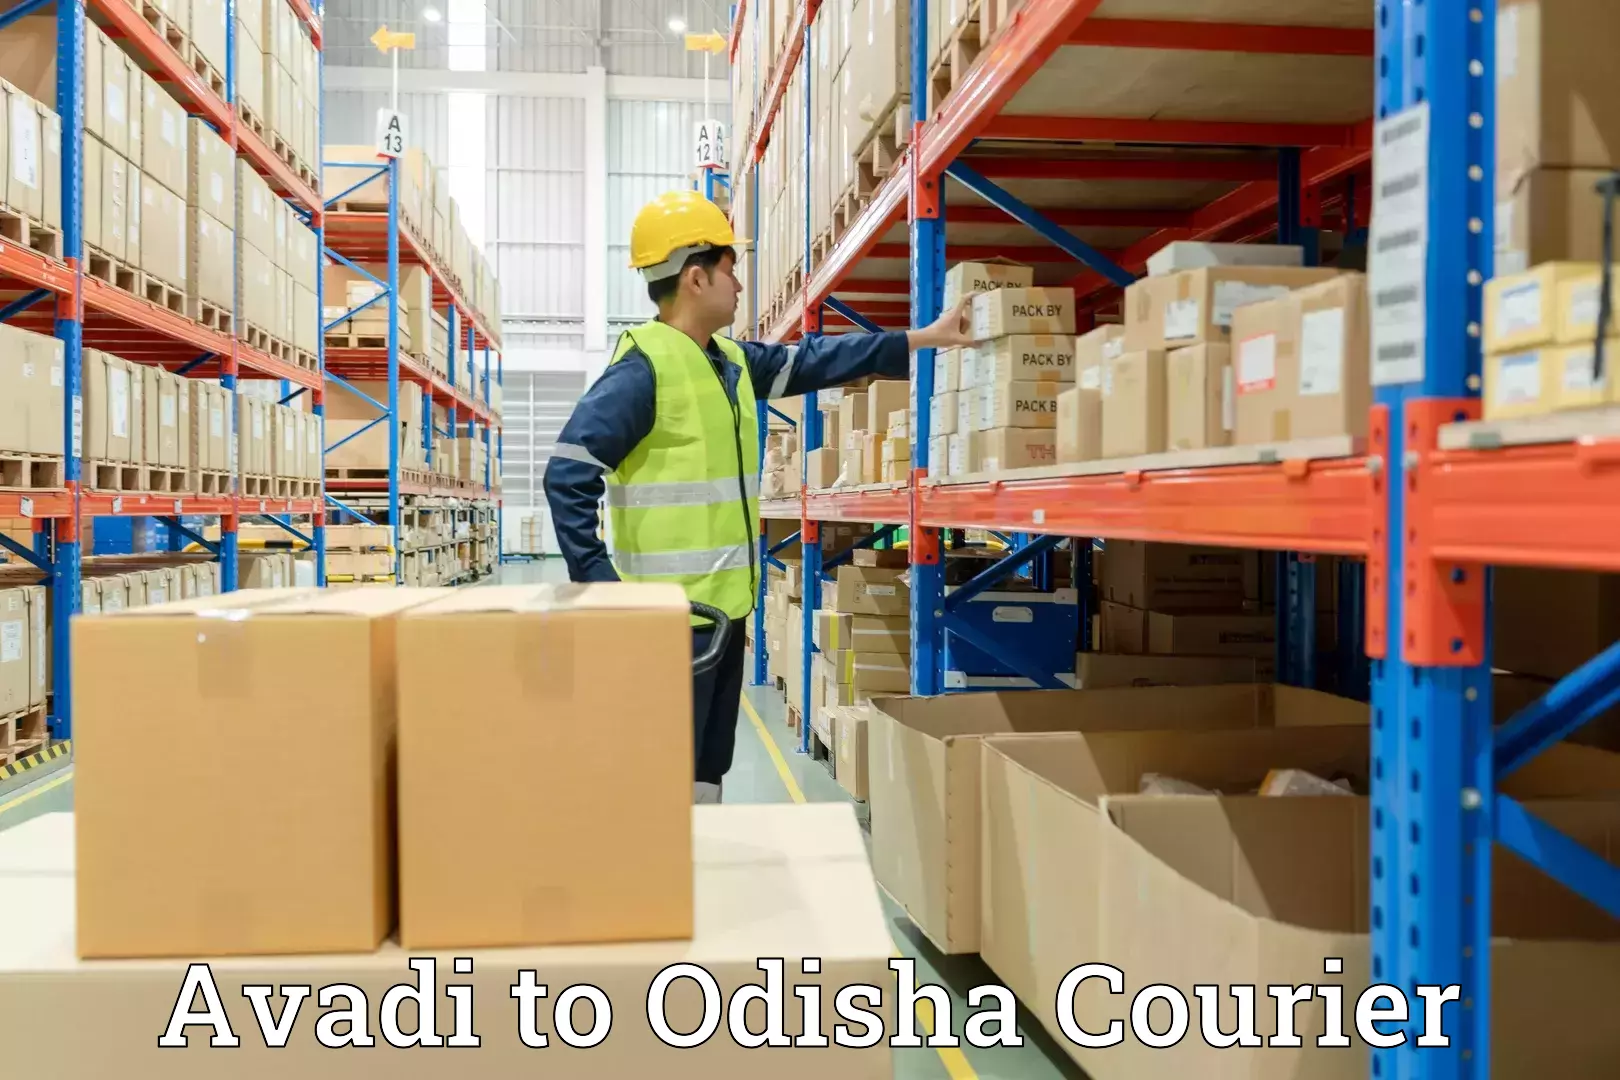 Full-service movers Avadi to Odisha